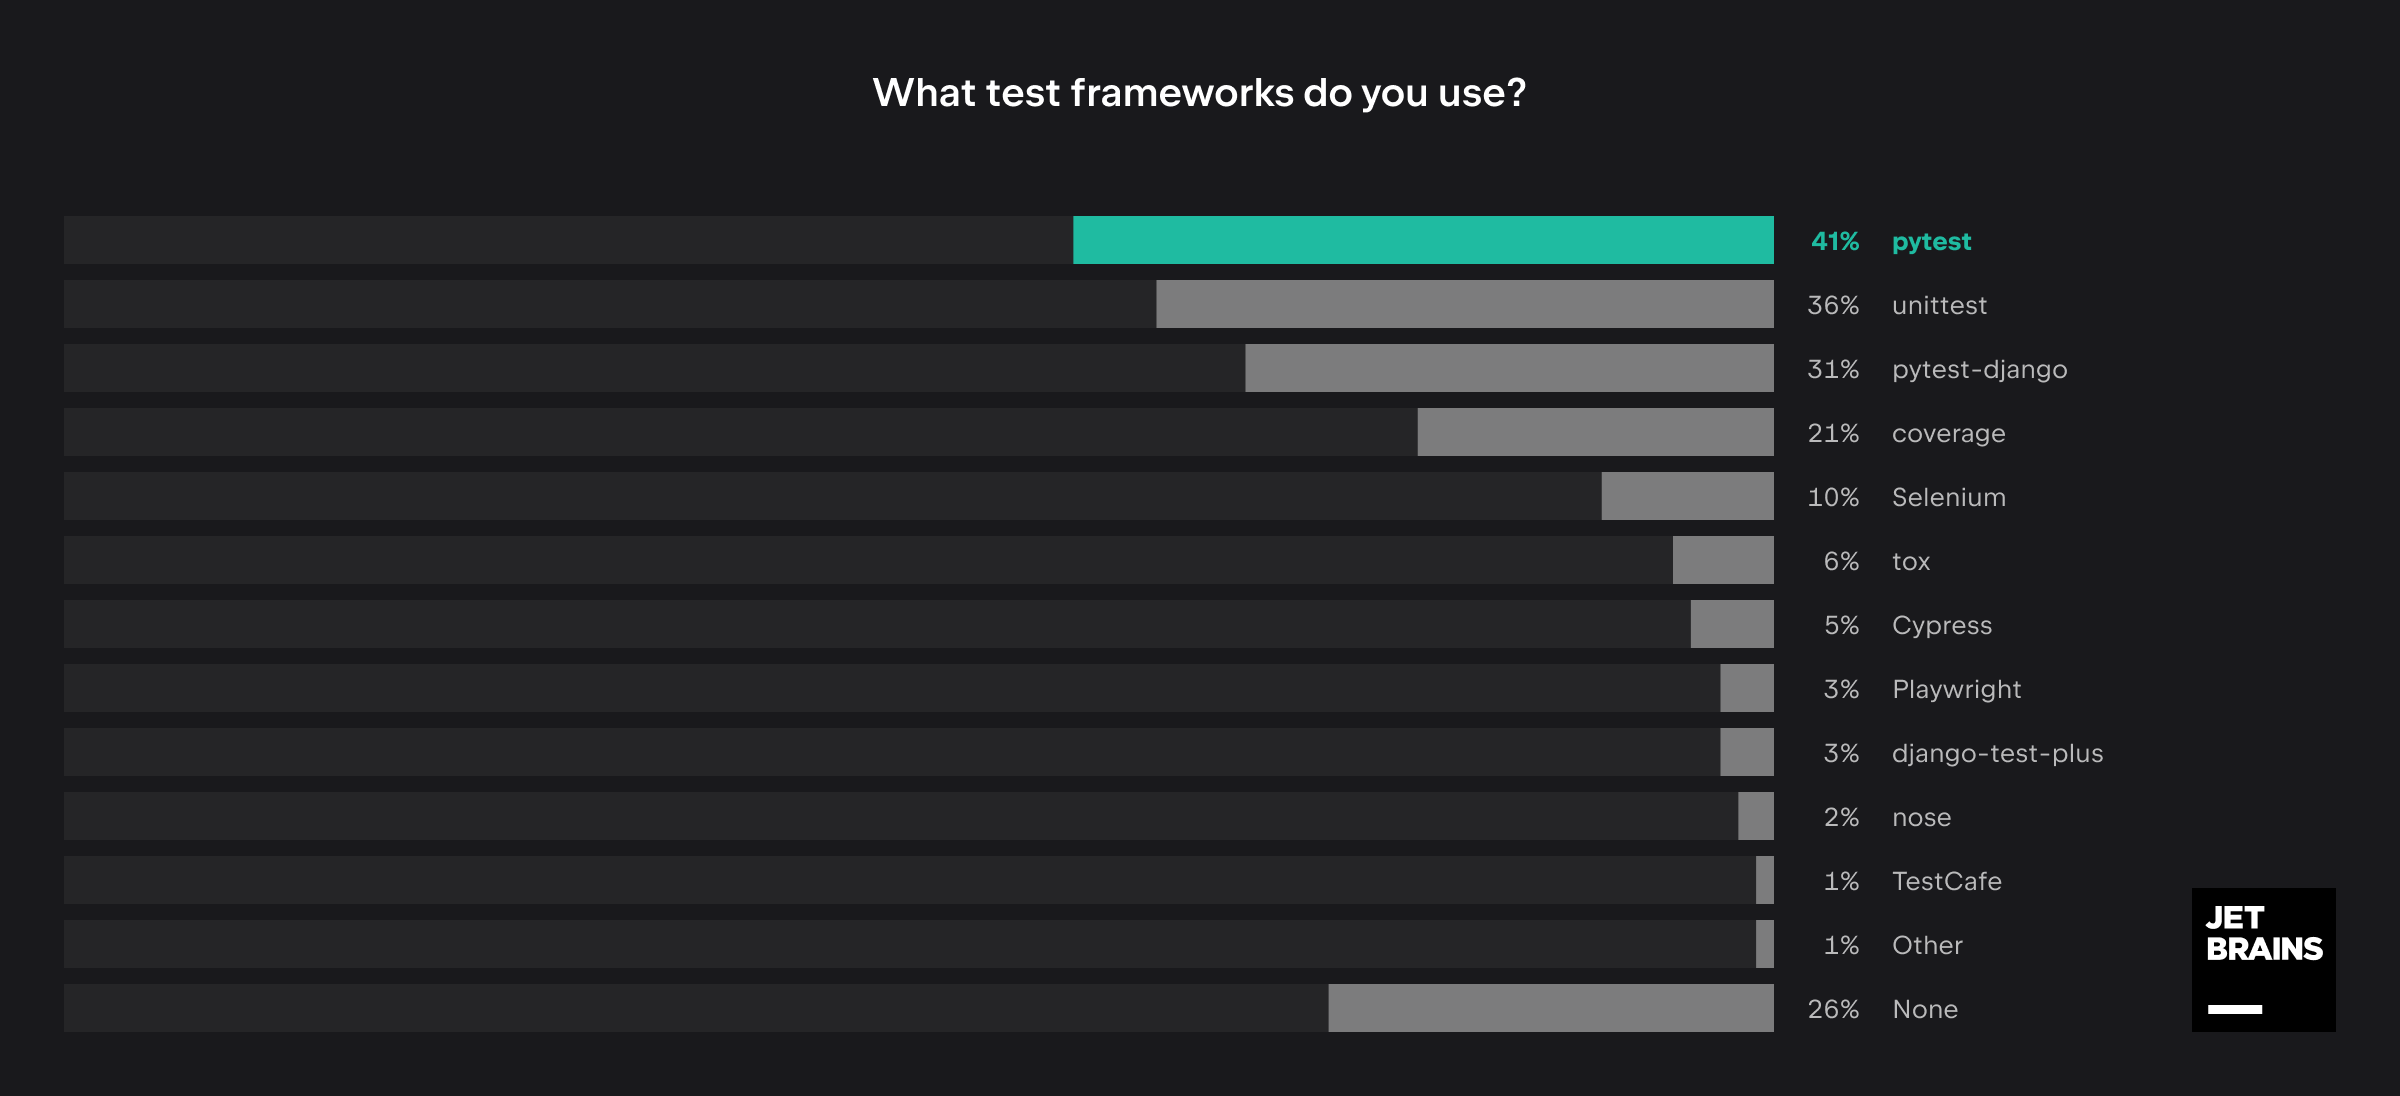 Test frameworks most used by Django developers